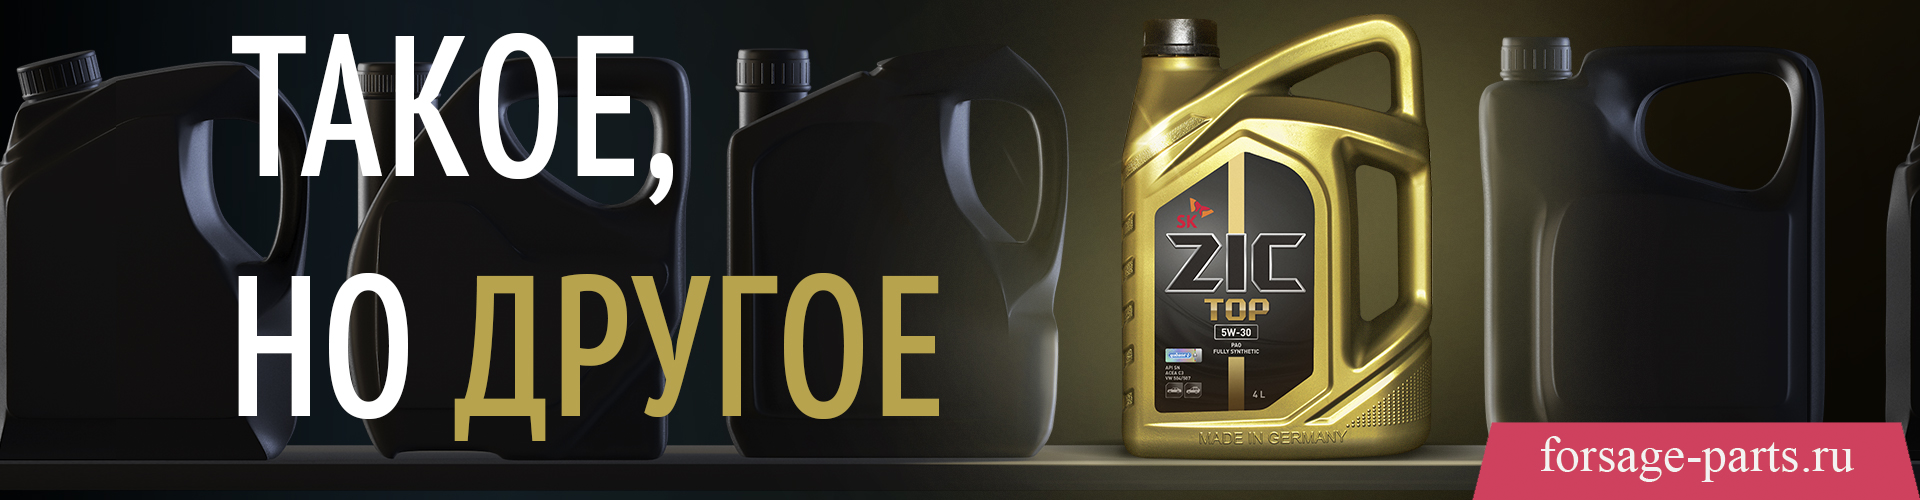 Моторные масла для легковой и легкой коммерческой техники ZIC